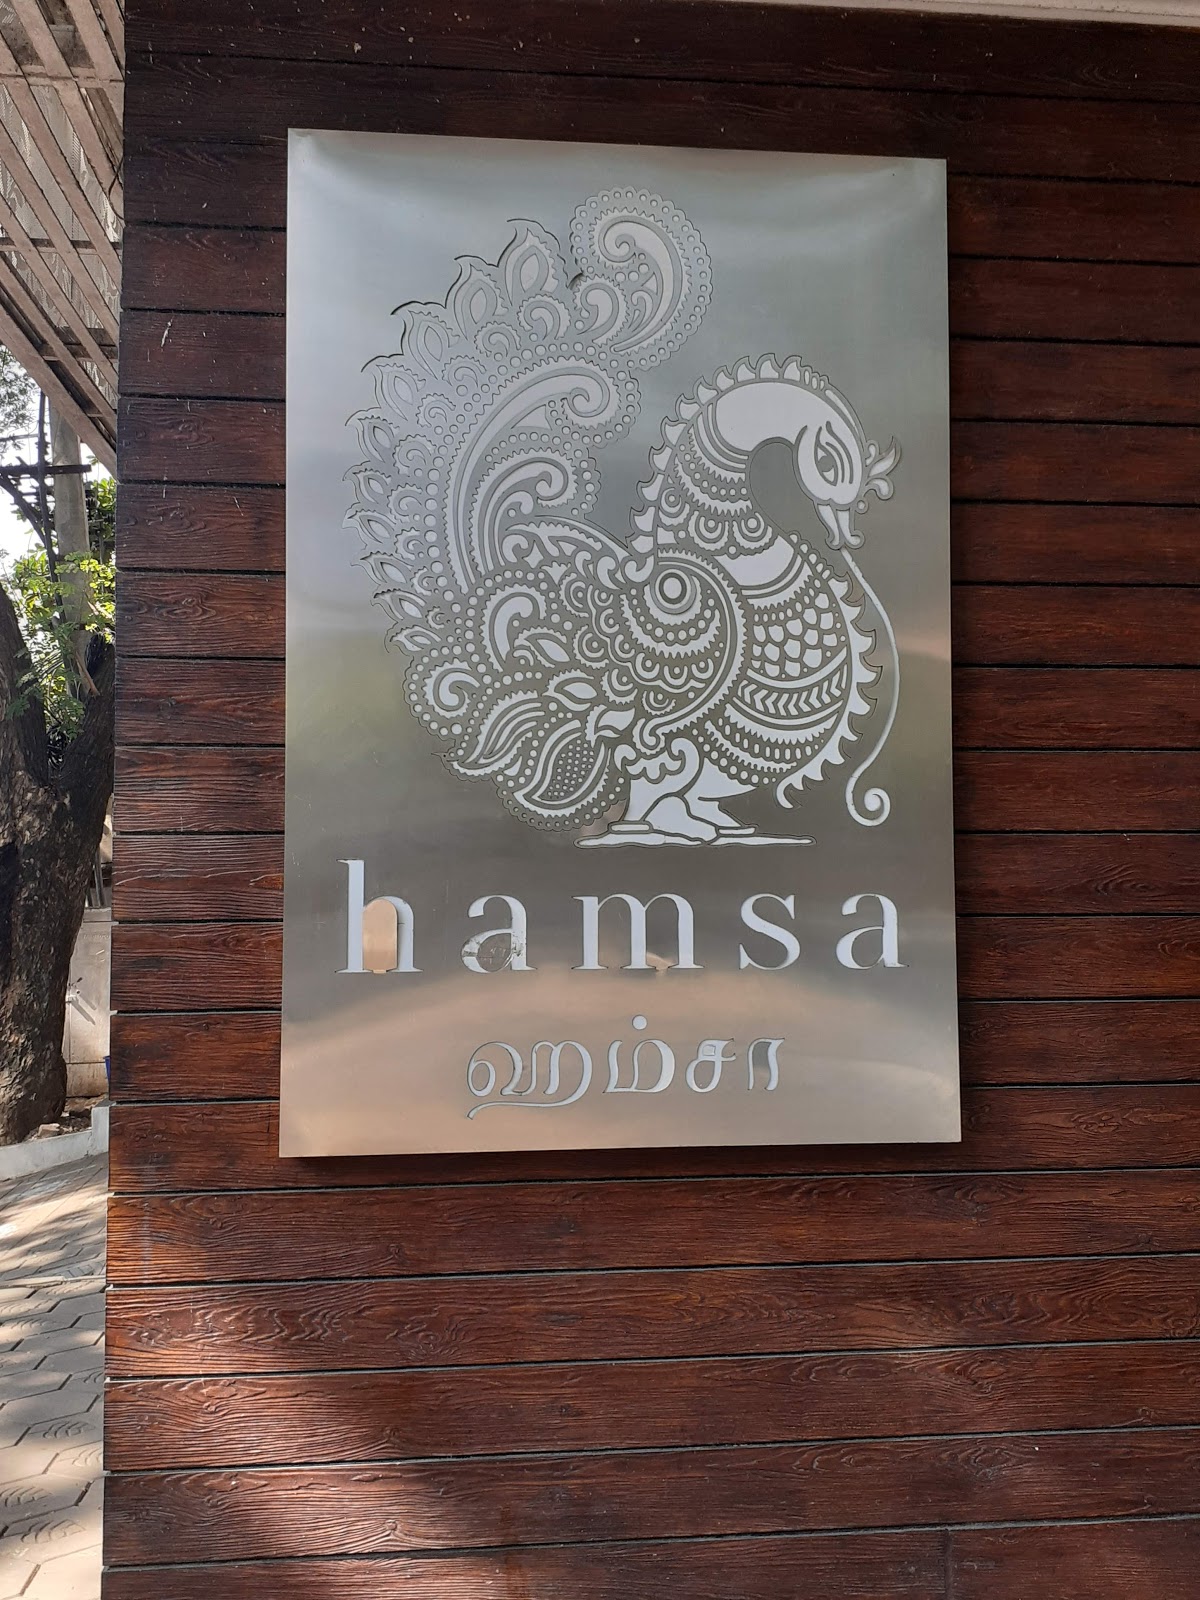 Utsav at Hamsa, till 29th Oct…